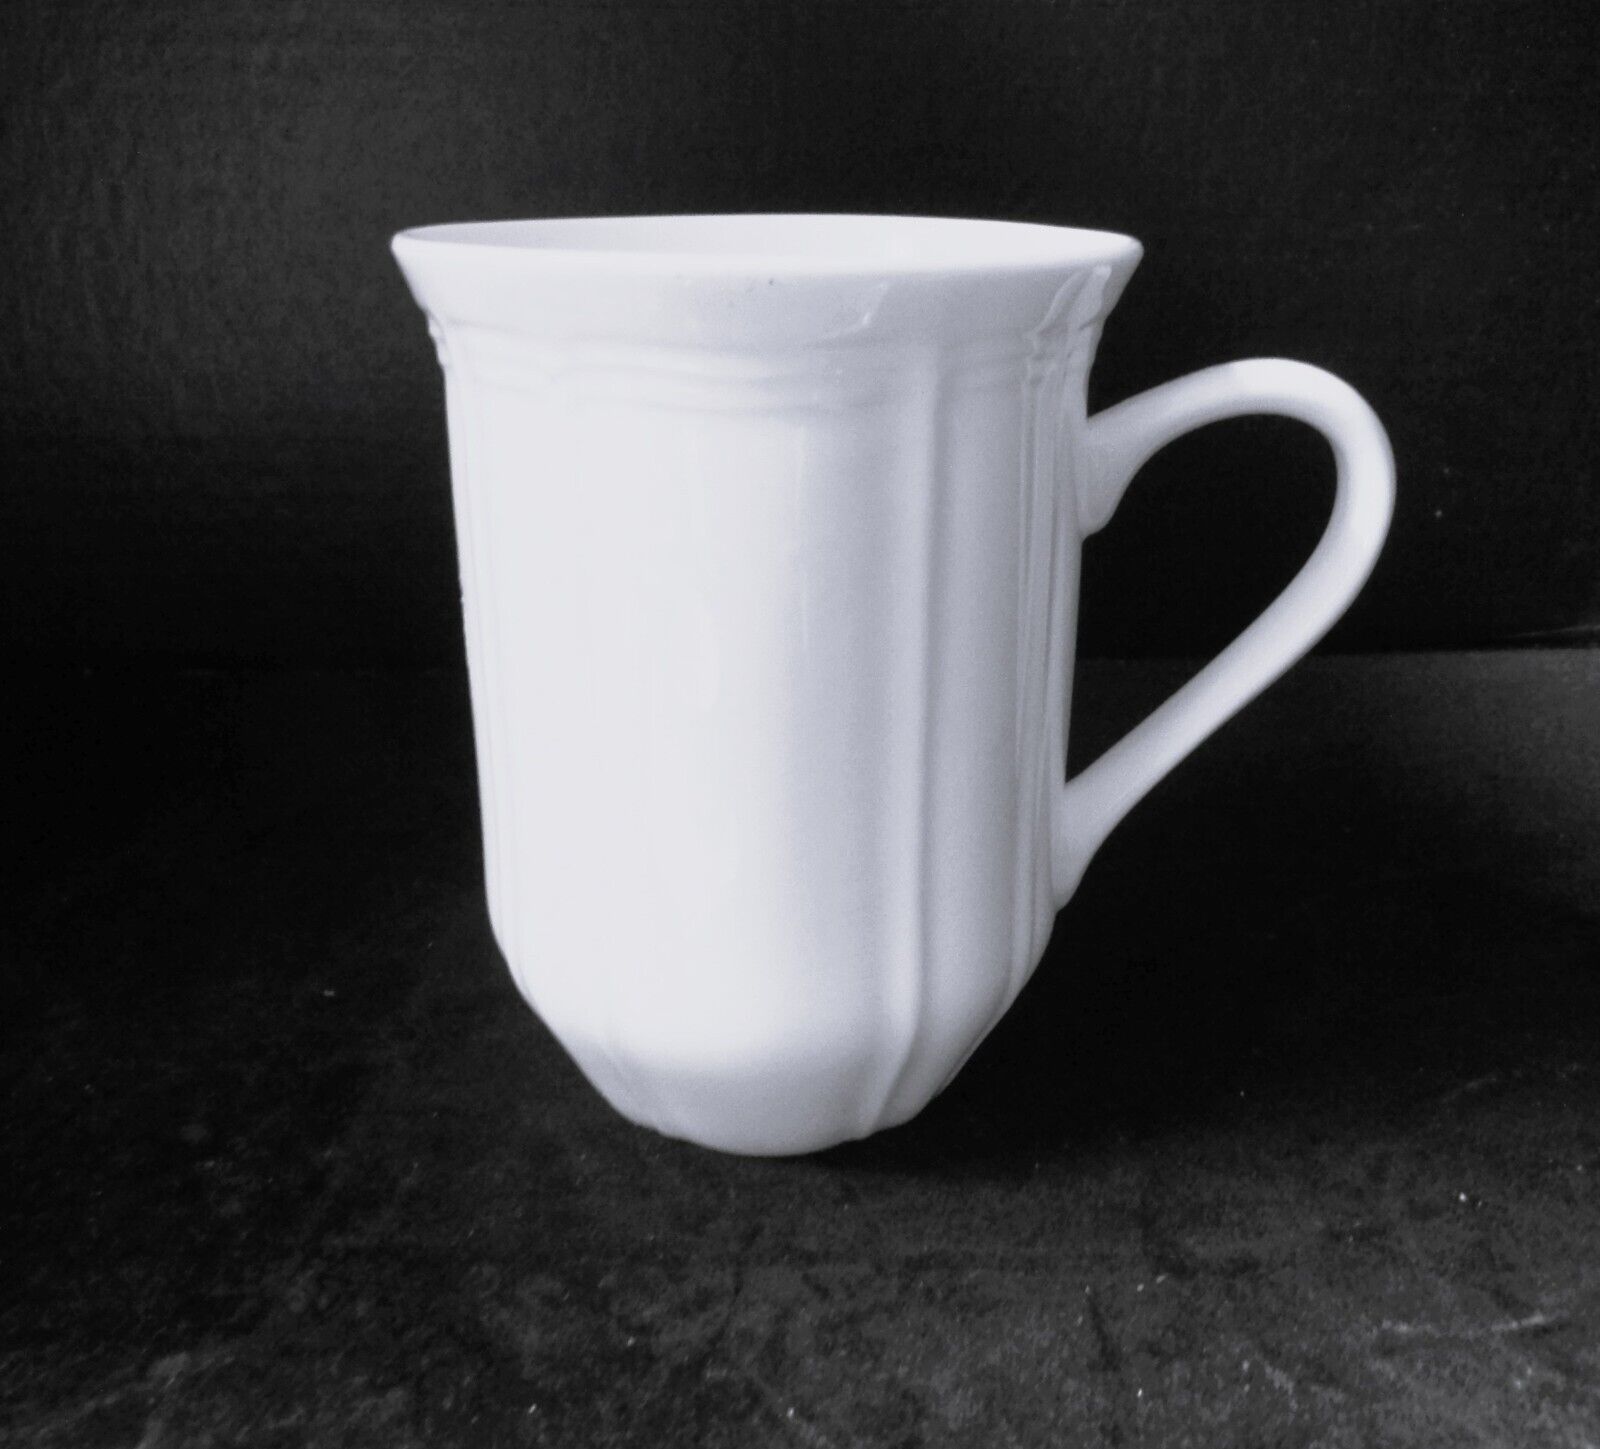 MIKASA ANTIQUE WHITE 10 oz Mug - New